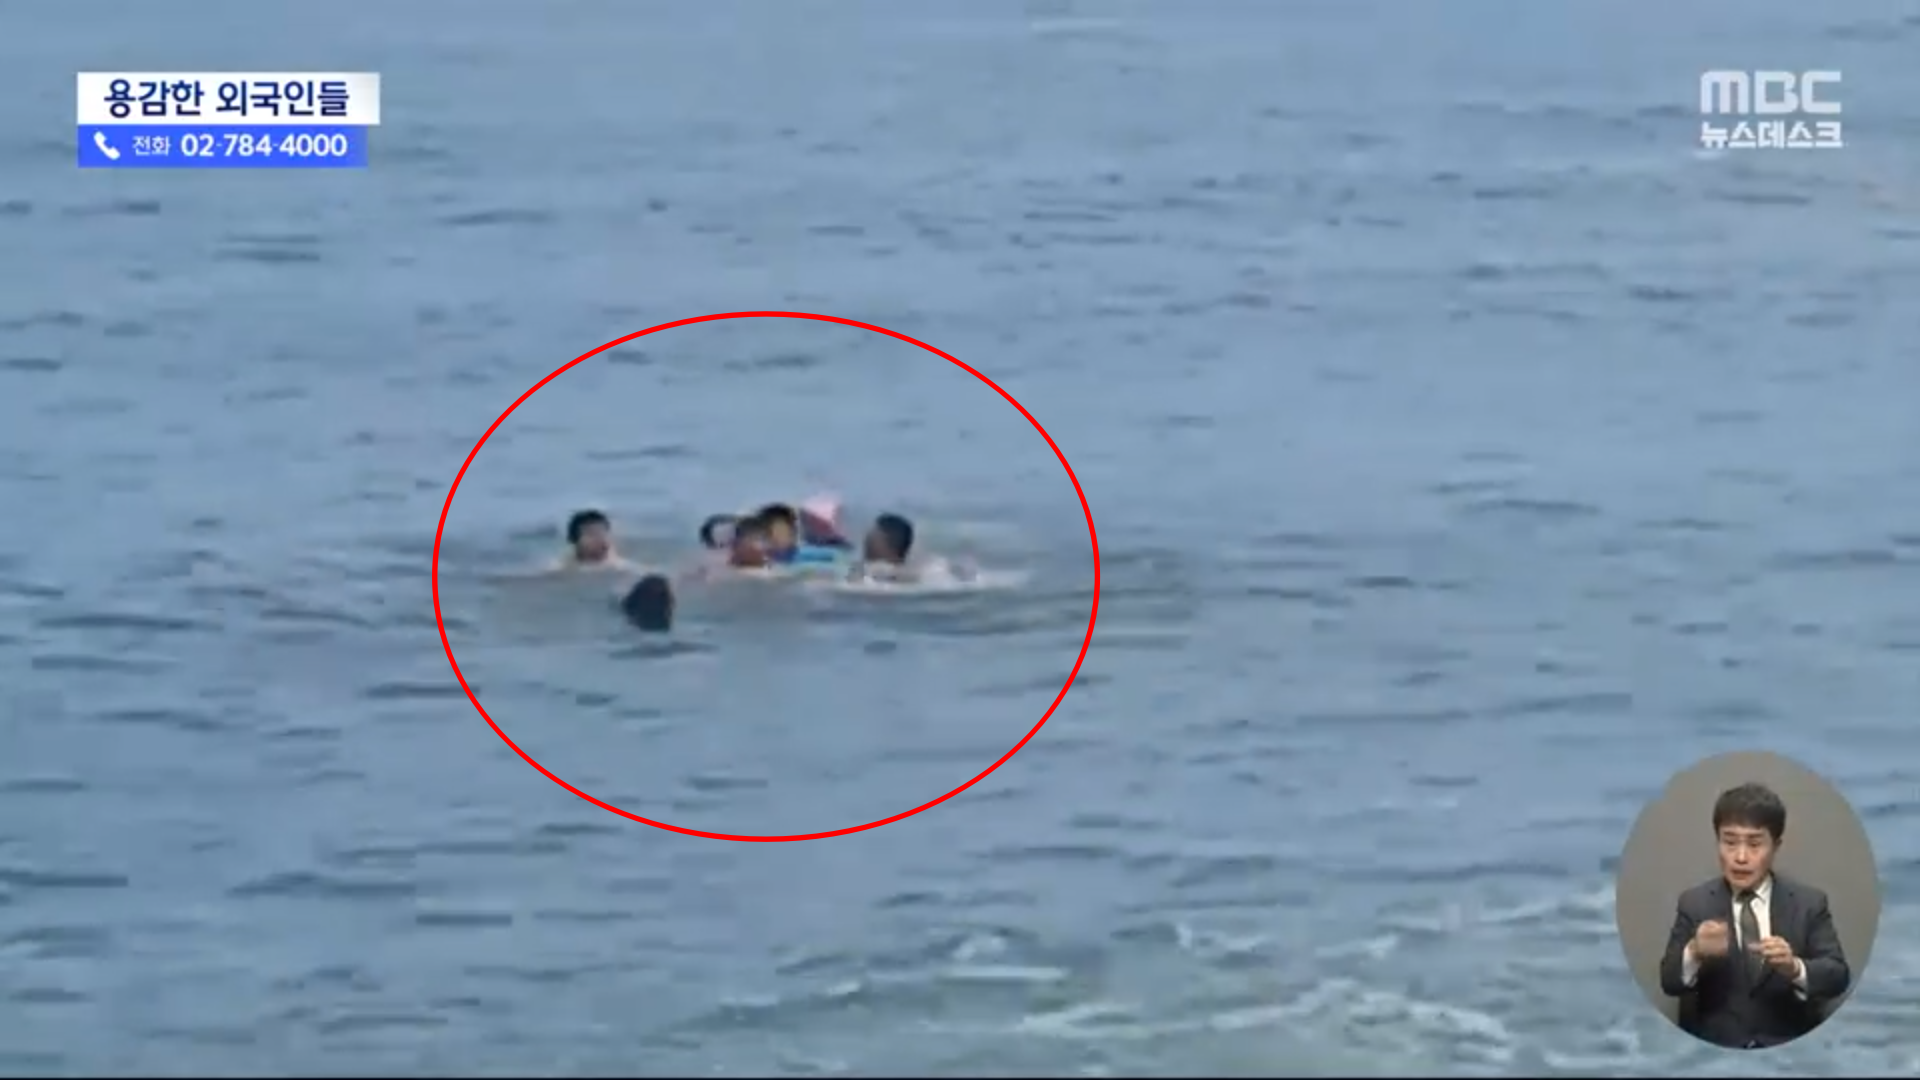 9일 영덕 장사해수욕장에서 튜브를 타고 물놀이를 하던 중 떠밀려 간 60대 할머니와 어린이를 외국인들이 구조했다. MBC 보도화면 캡처